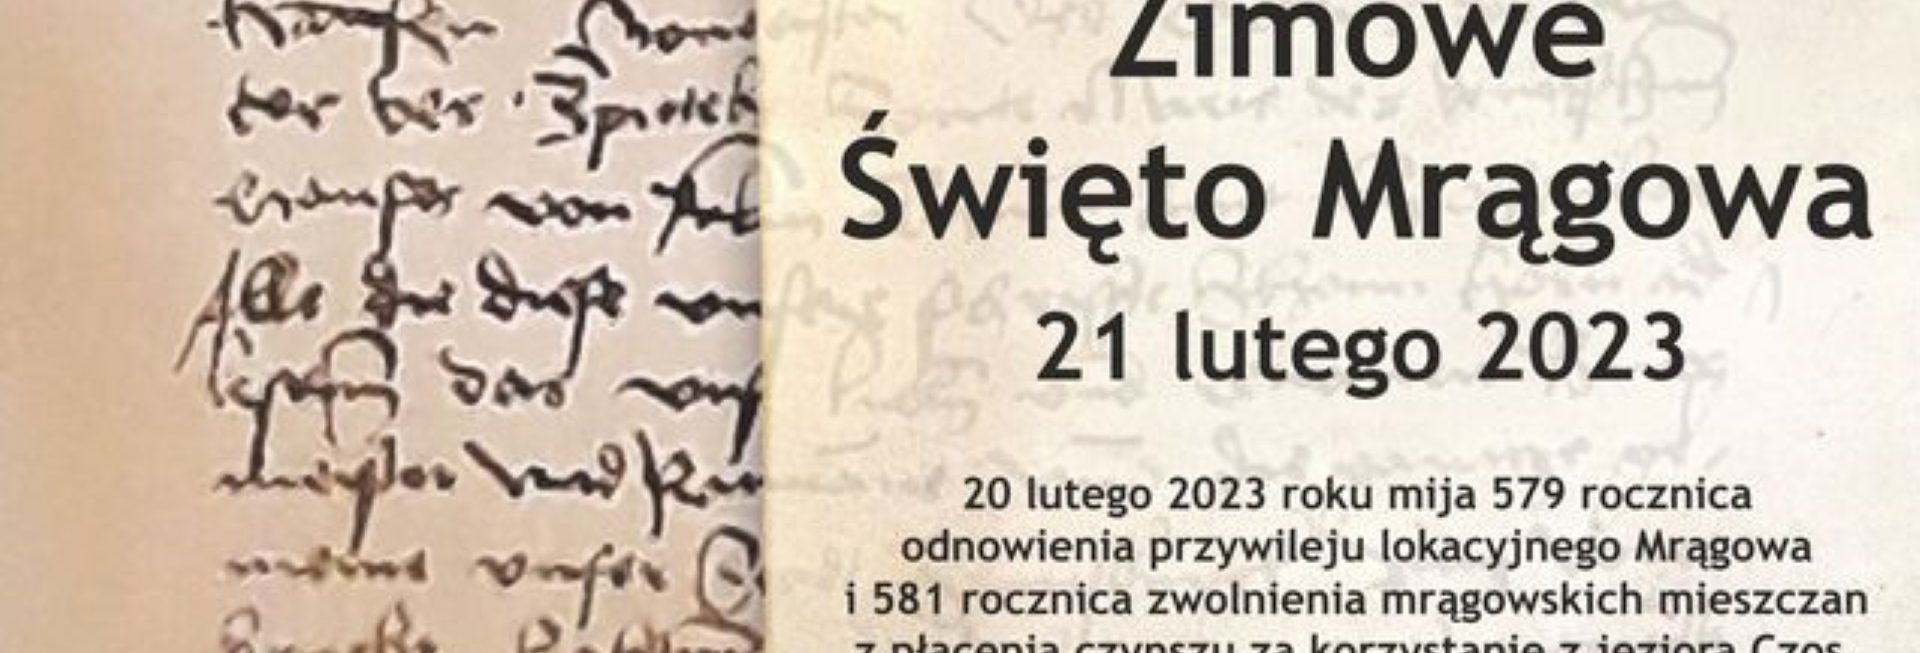 Plakat zapraszający we wtorek 21 lutego 2023 r. na do Mrągowa na "Zimowe Święto w Mrągowie" - Muzeum w Mrągowie 2023.